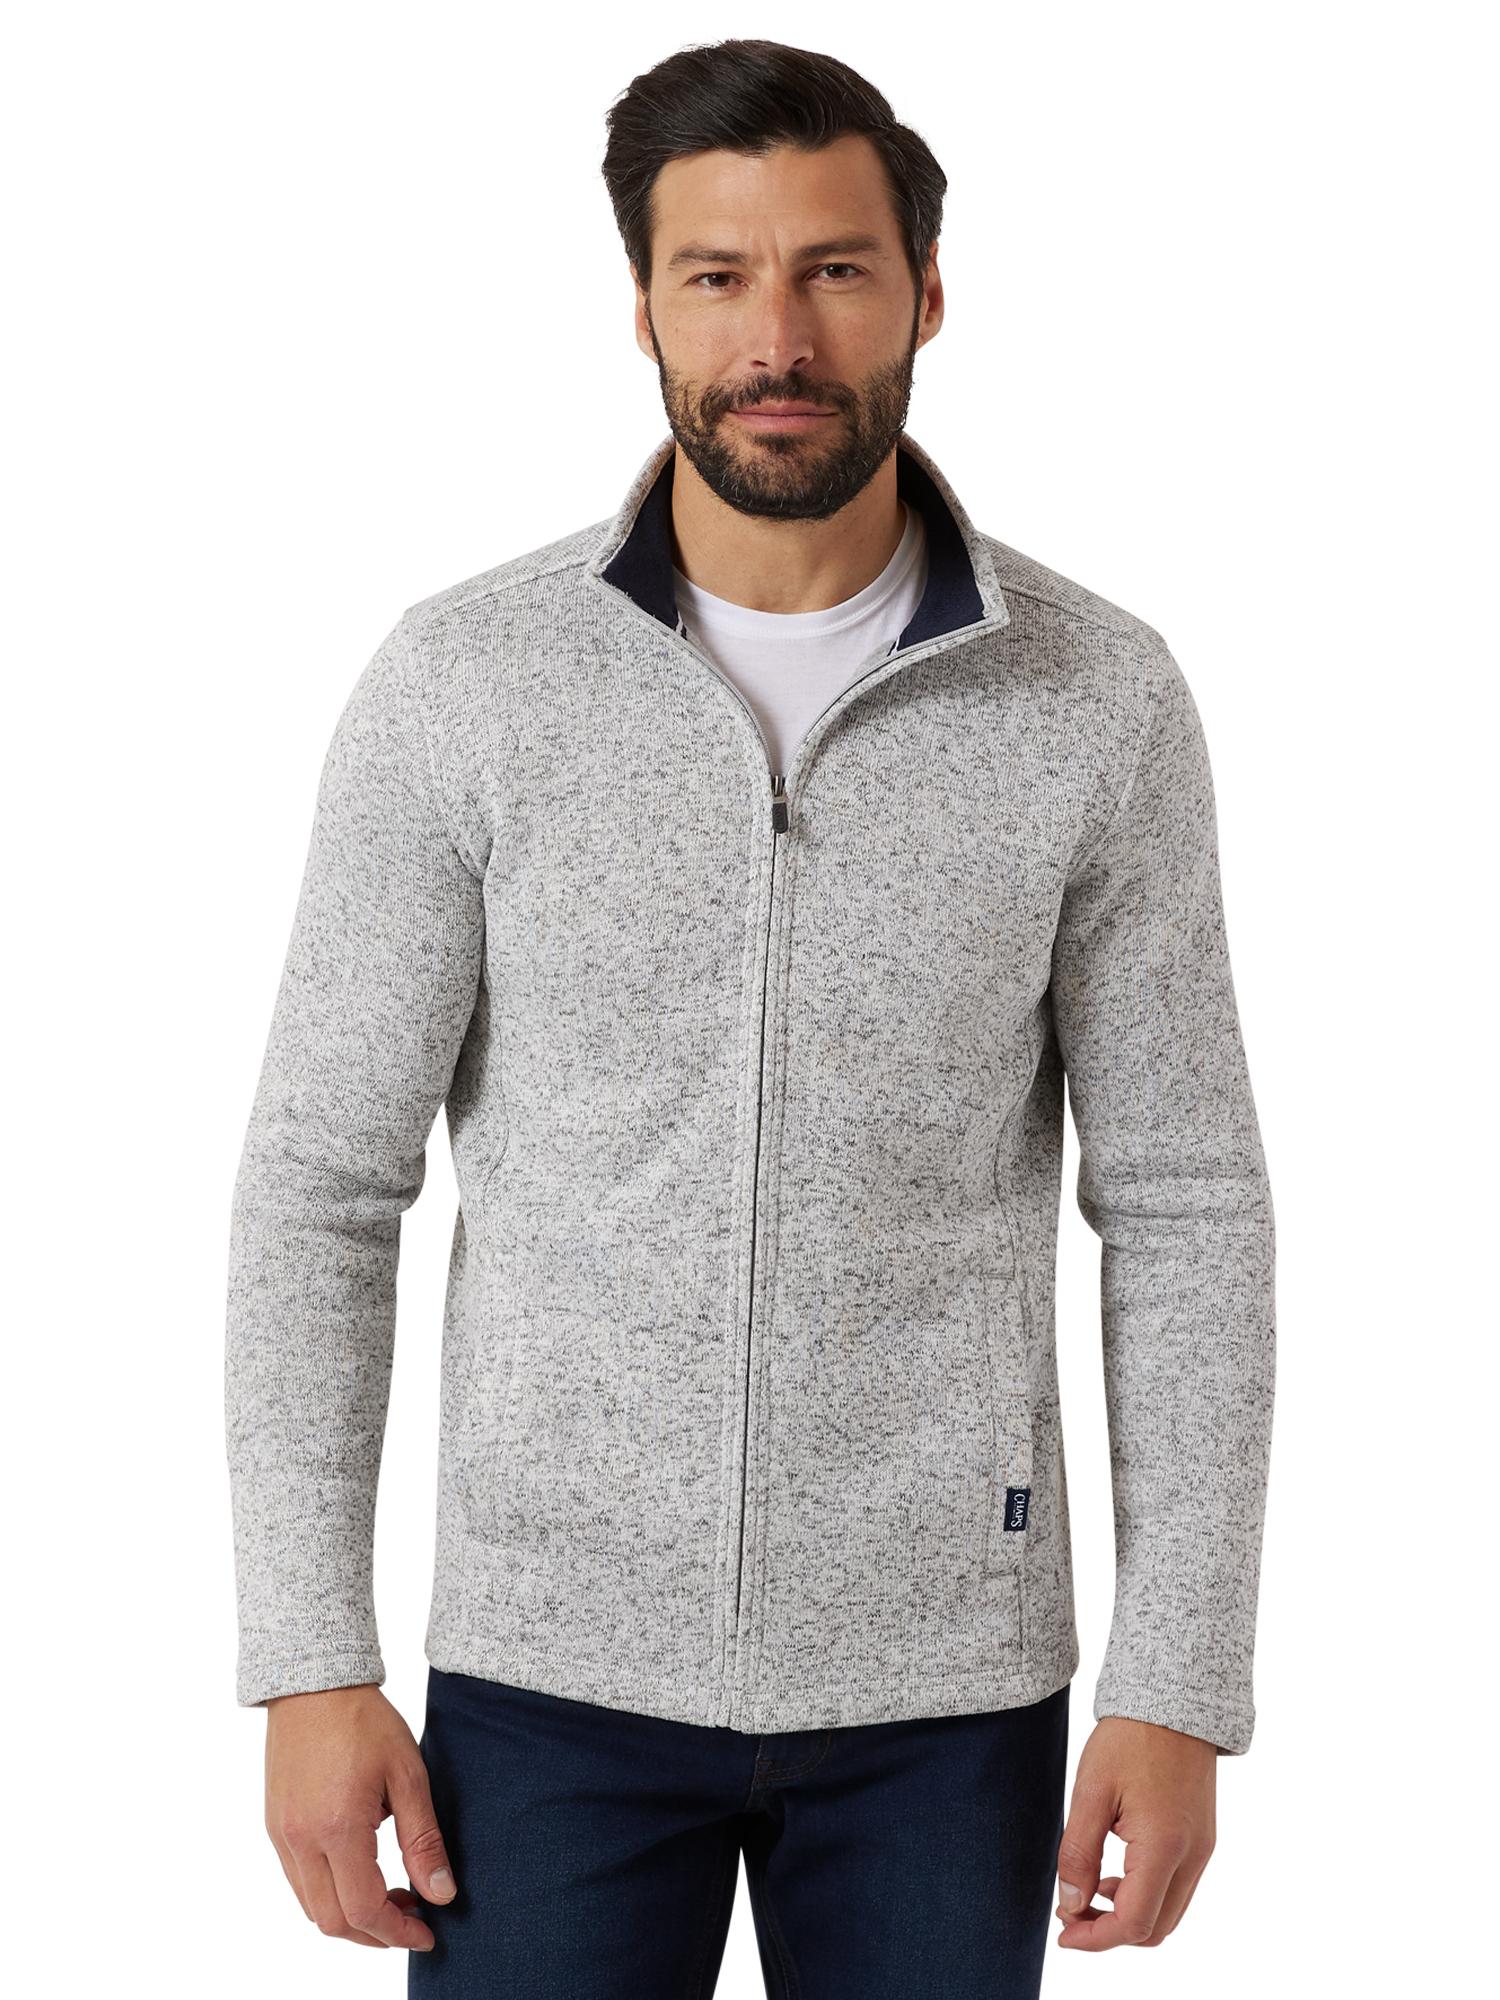 Chaps Men's & Big Men's Full Zip Sweater Fleece - image 1 of 7